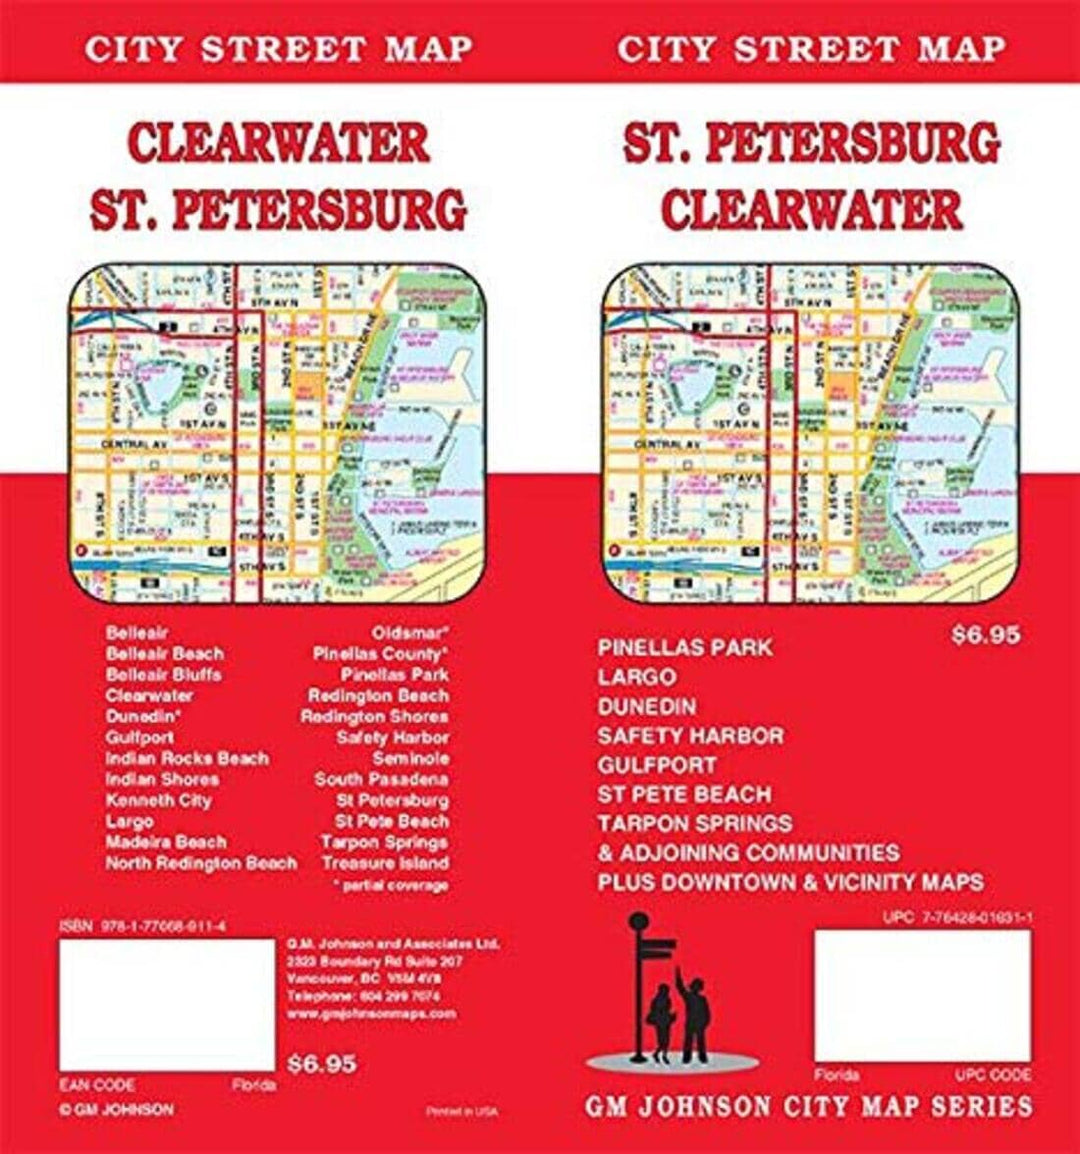 St. Petersburg : Clearwater : city street map = Clearwater : St. Petersburg : city street map | GM Johnson carte pliée 